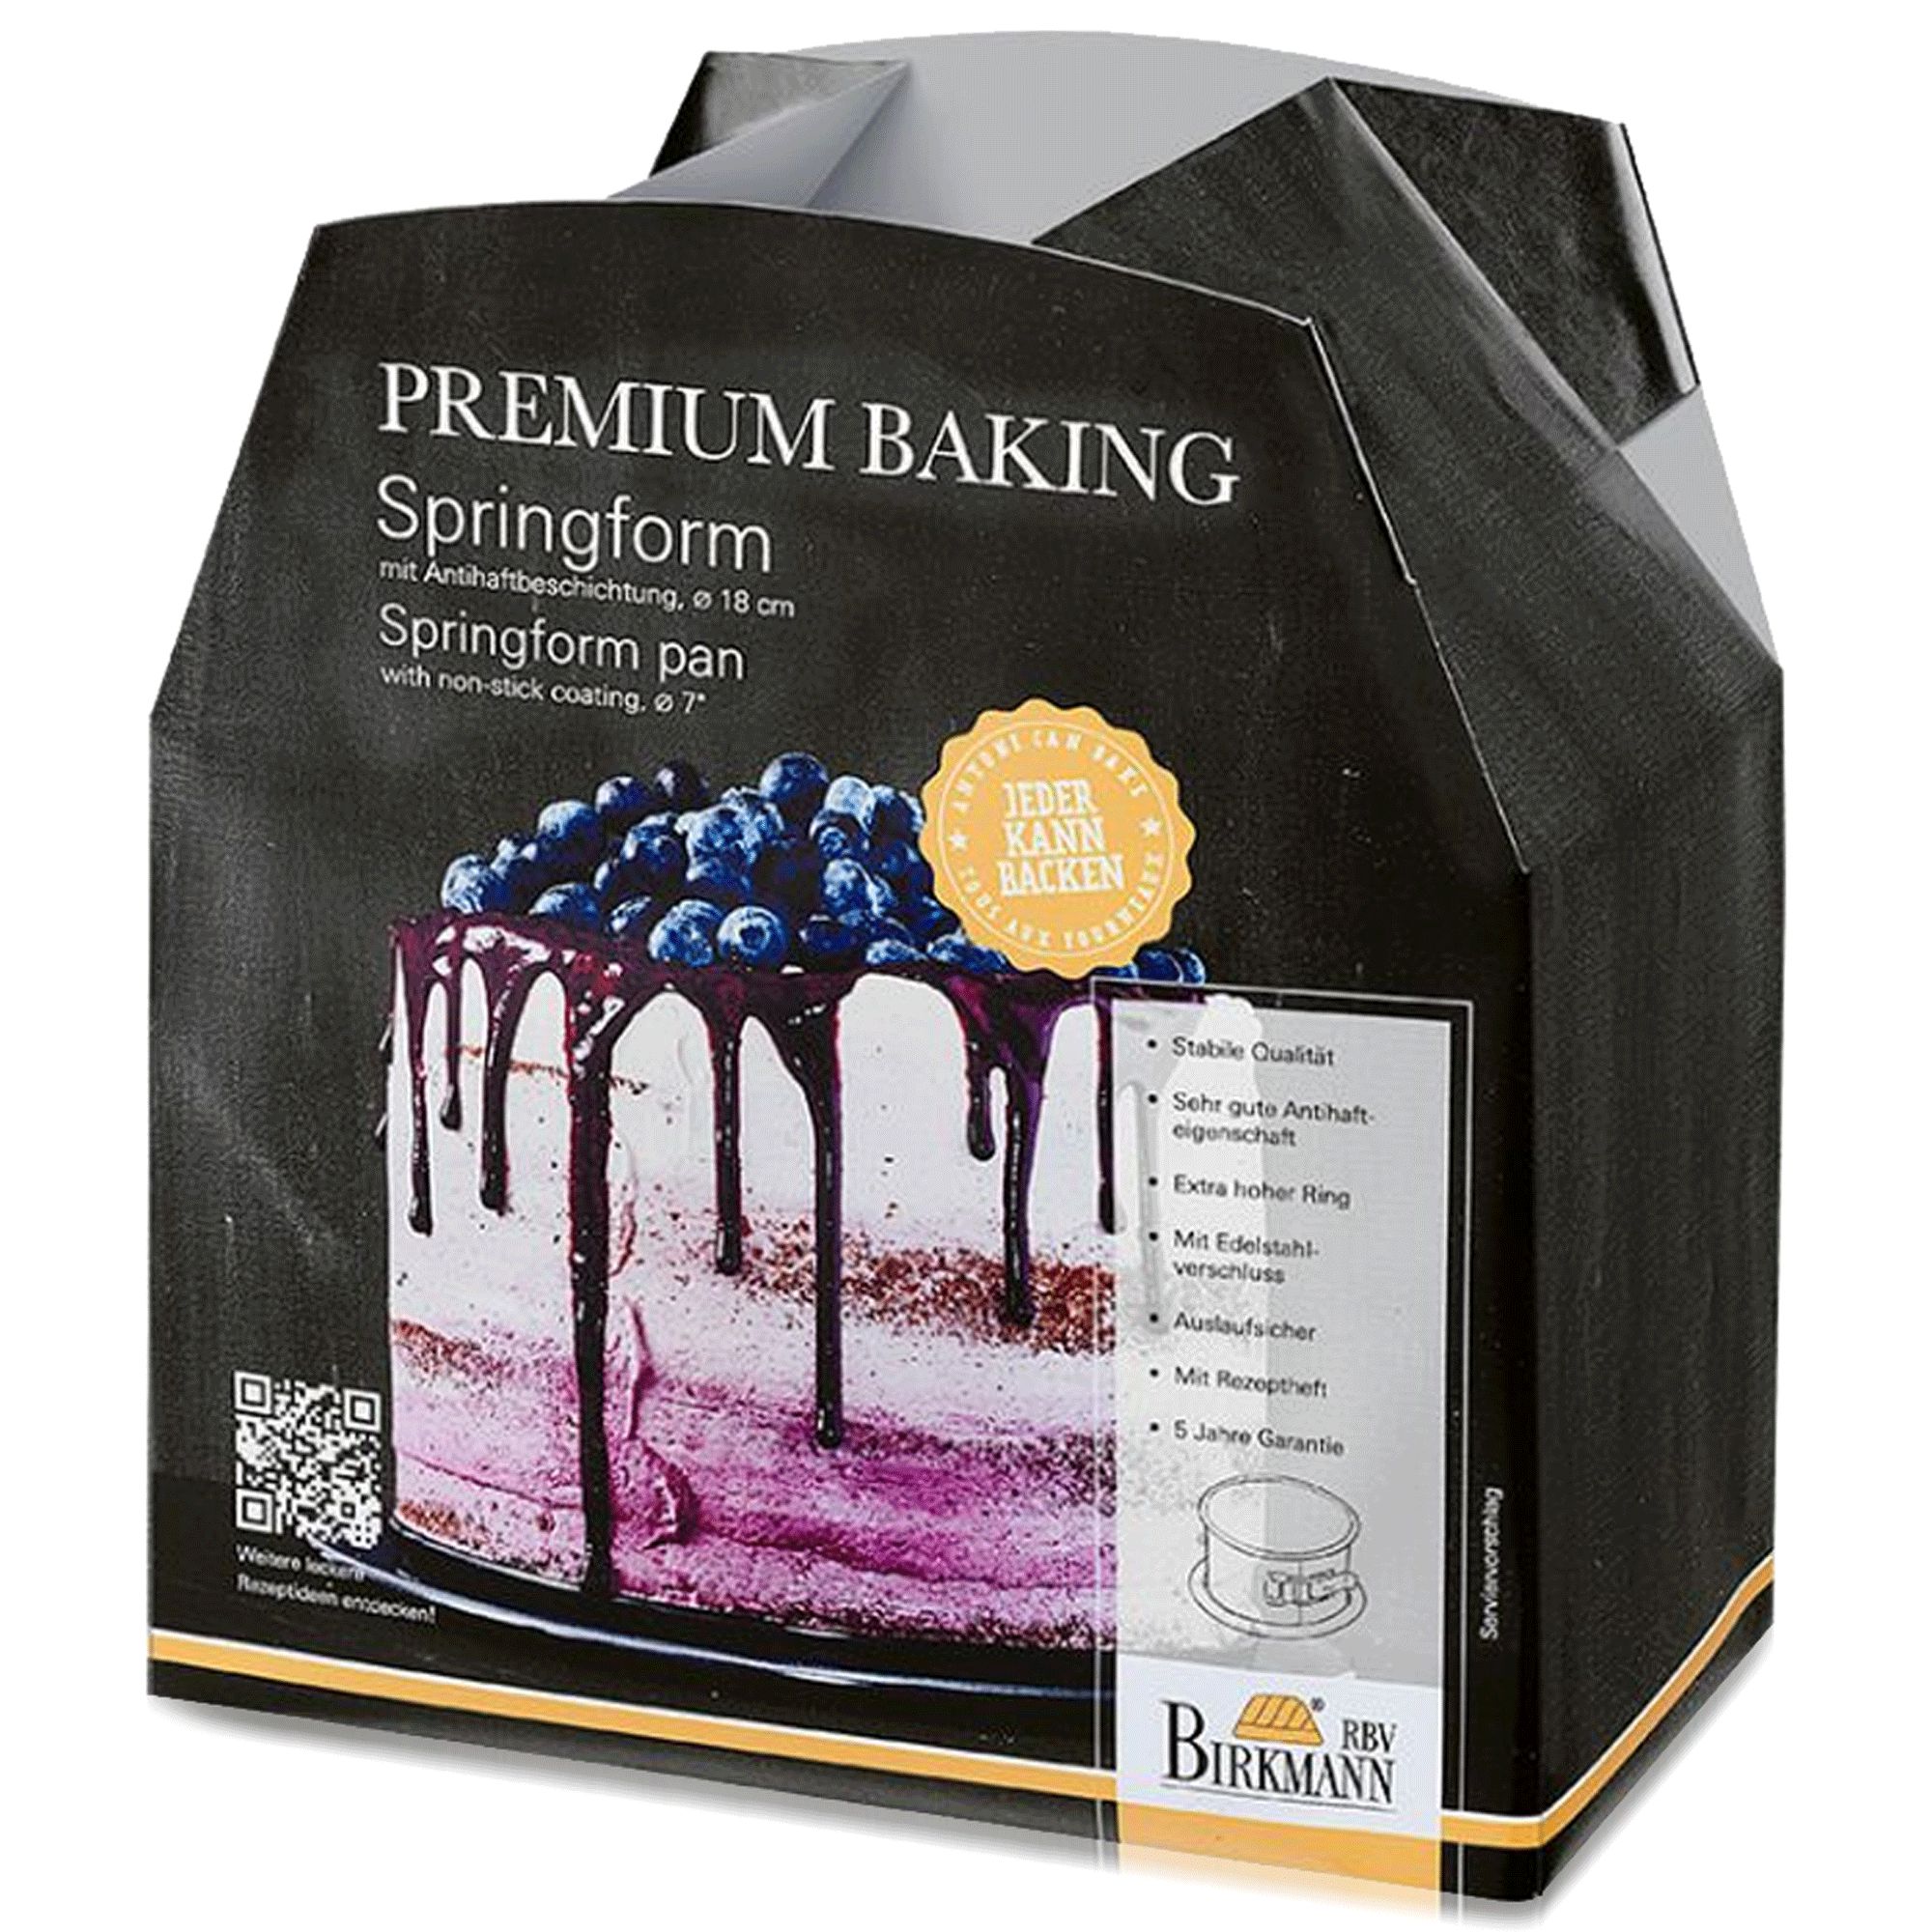 Birkmann - Springform, 18 cm, mit 12 cm hohem Rand - Premium Baking